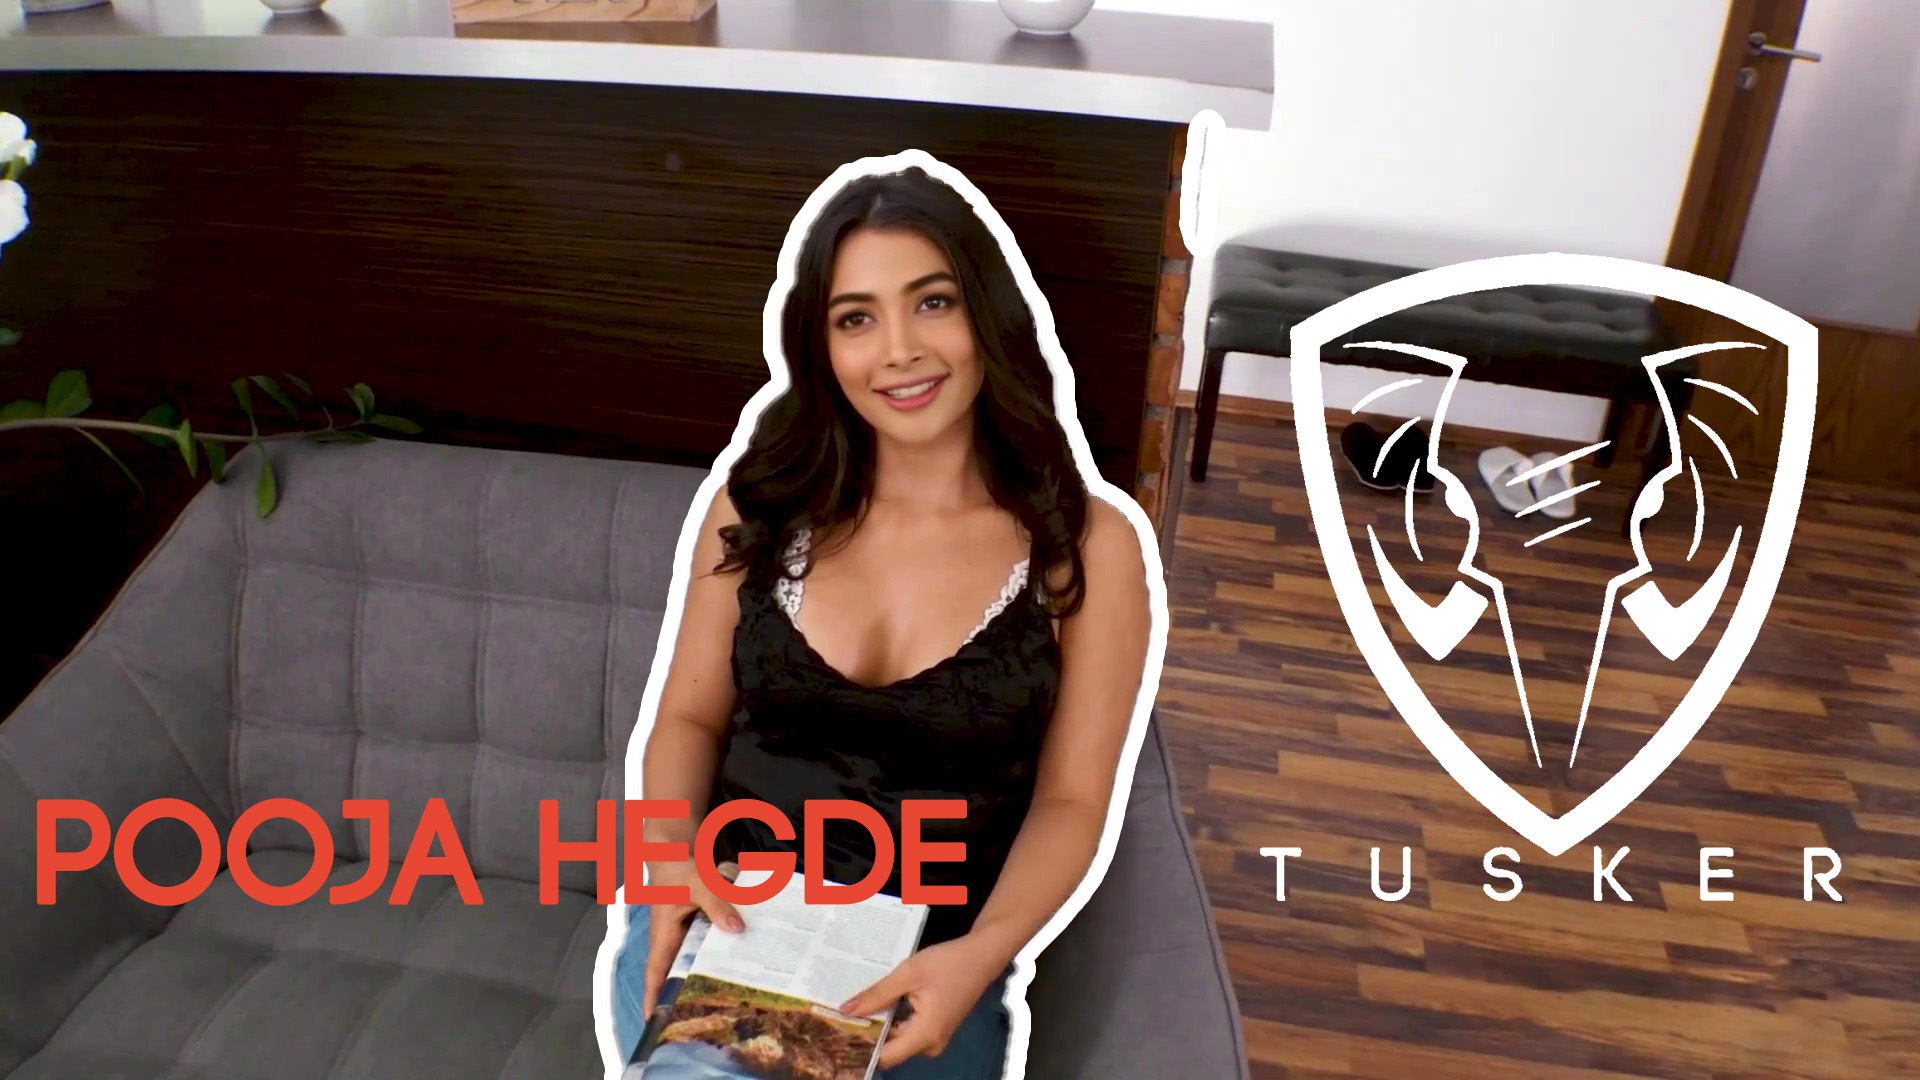 Pooja Hegde Deep Massage - Tusker Free Video